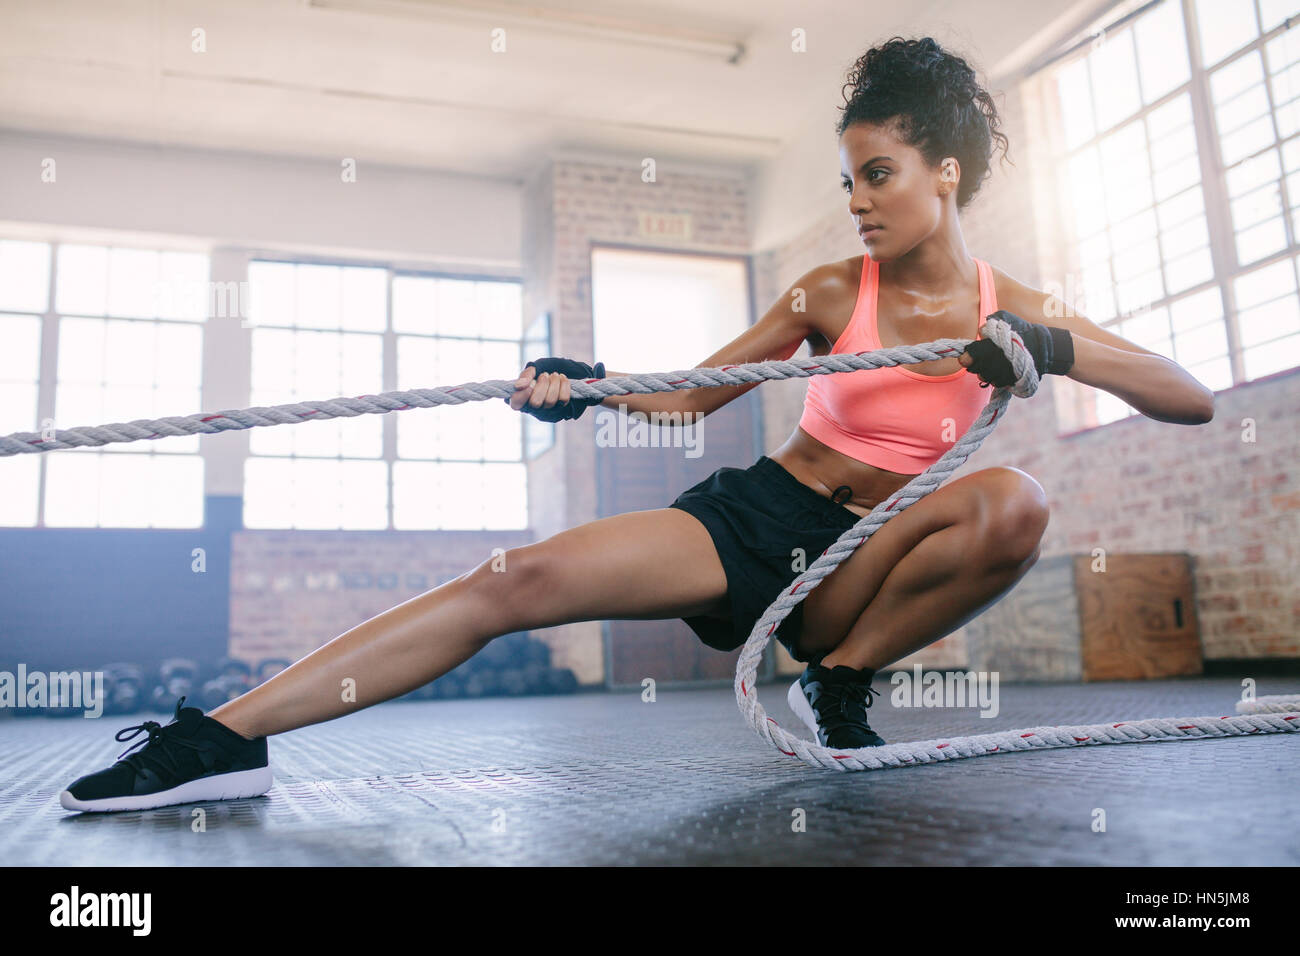 Aufnahme des jungen Fitness weiblichen Turnen mit Seil in einem  Fitnessstudio. Junge Frau am Gym Seil ziehen Stockfotografie - Alamy